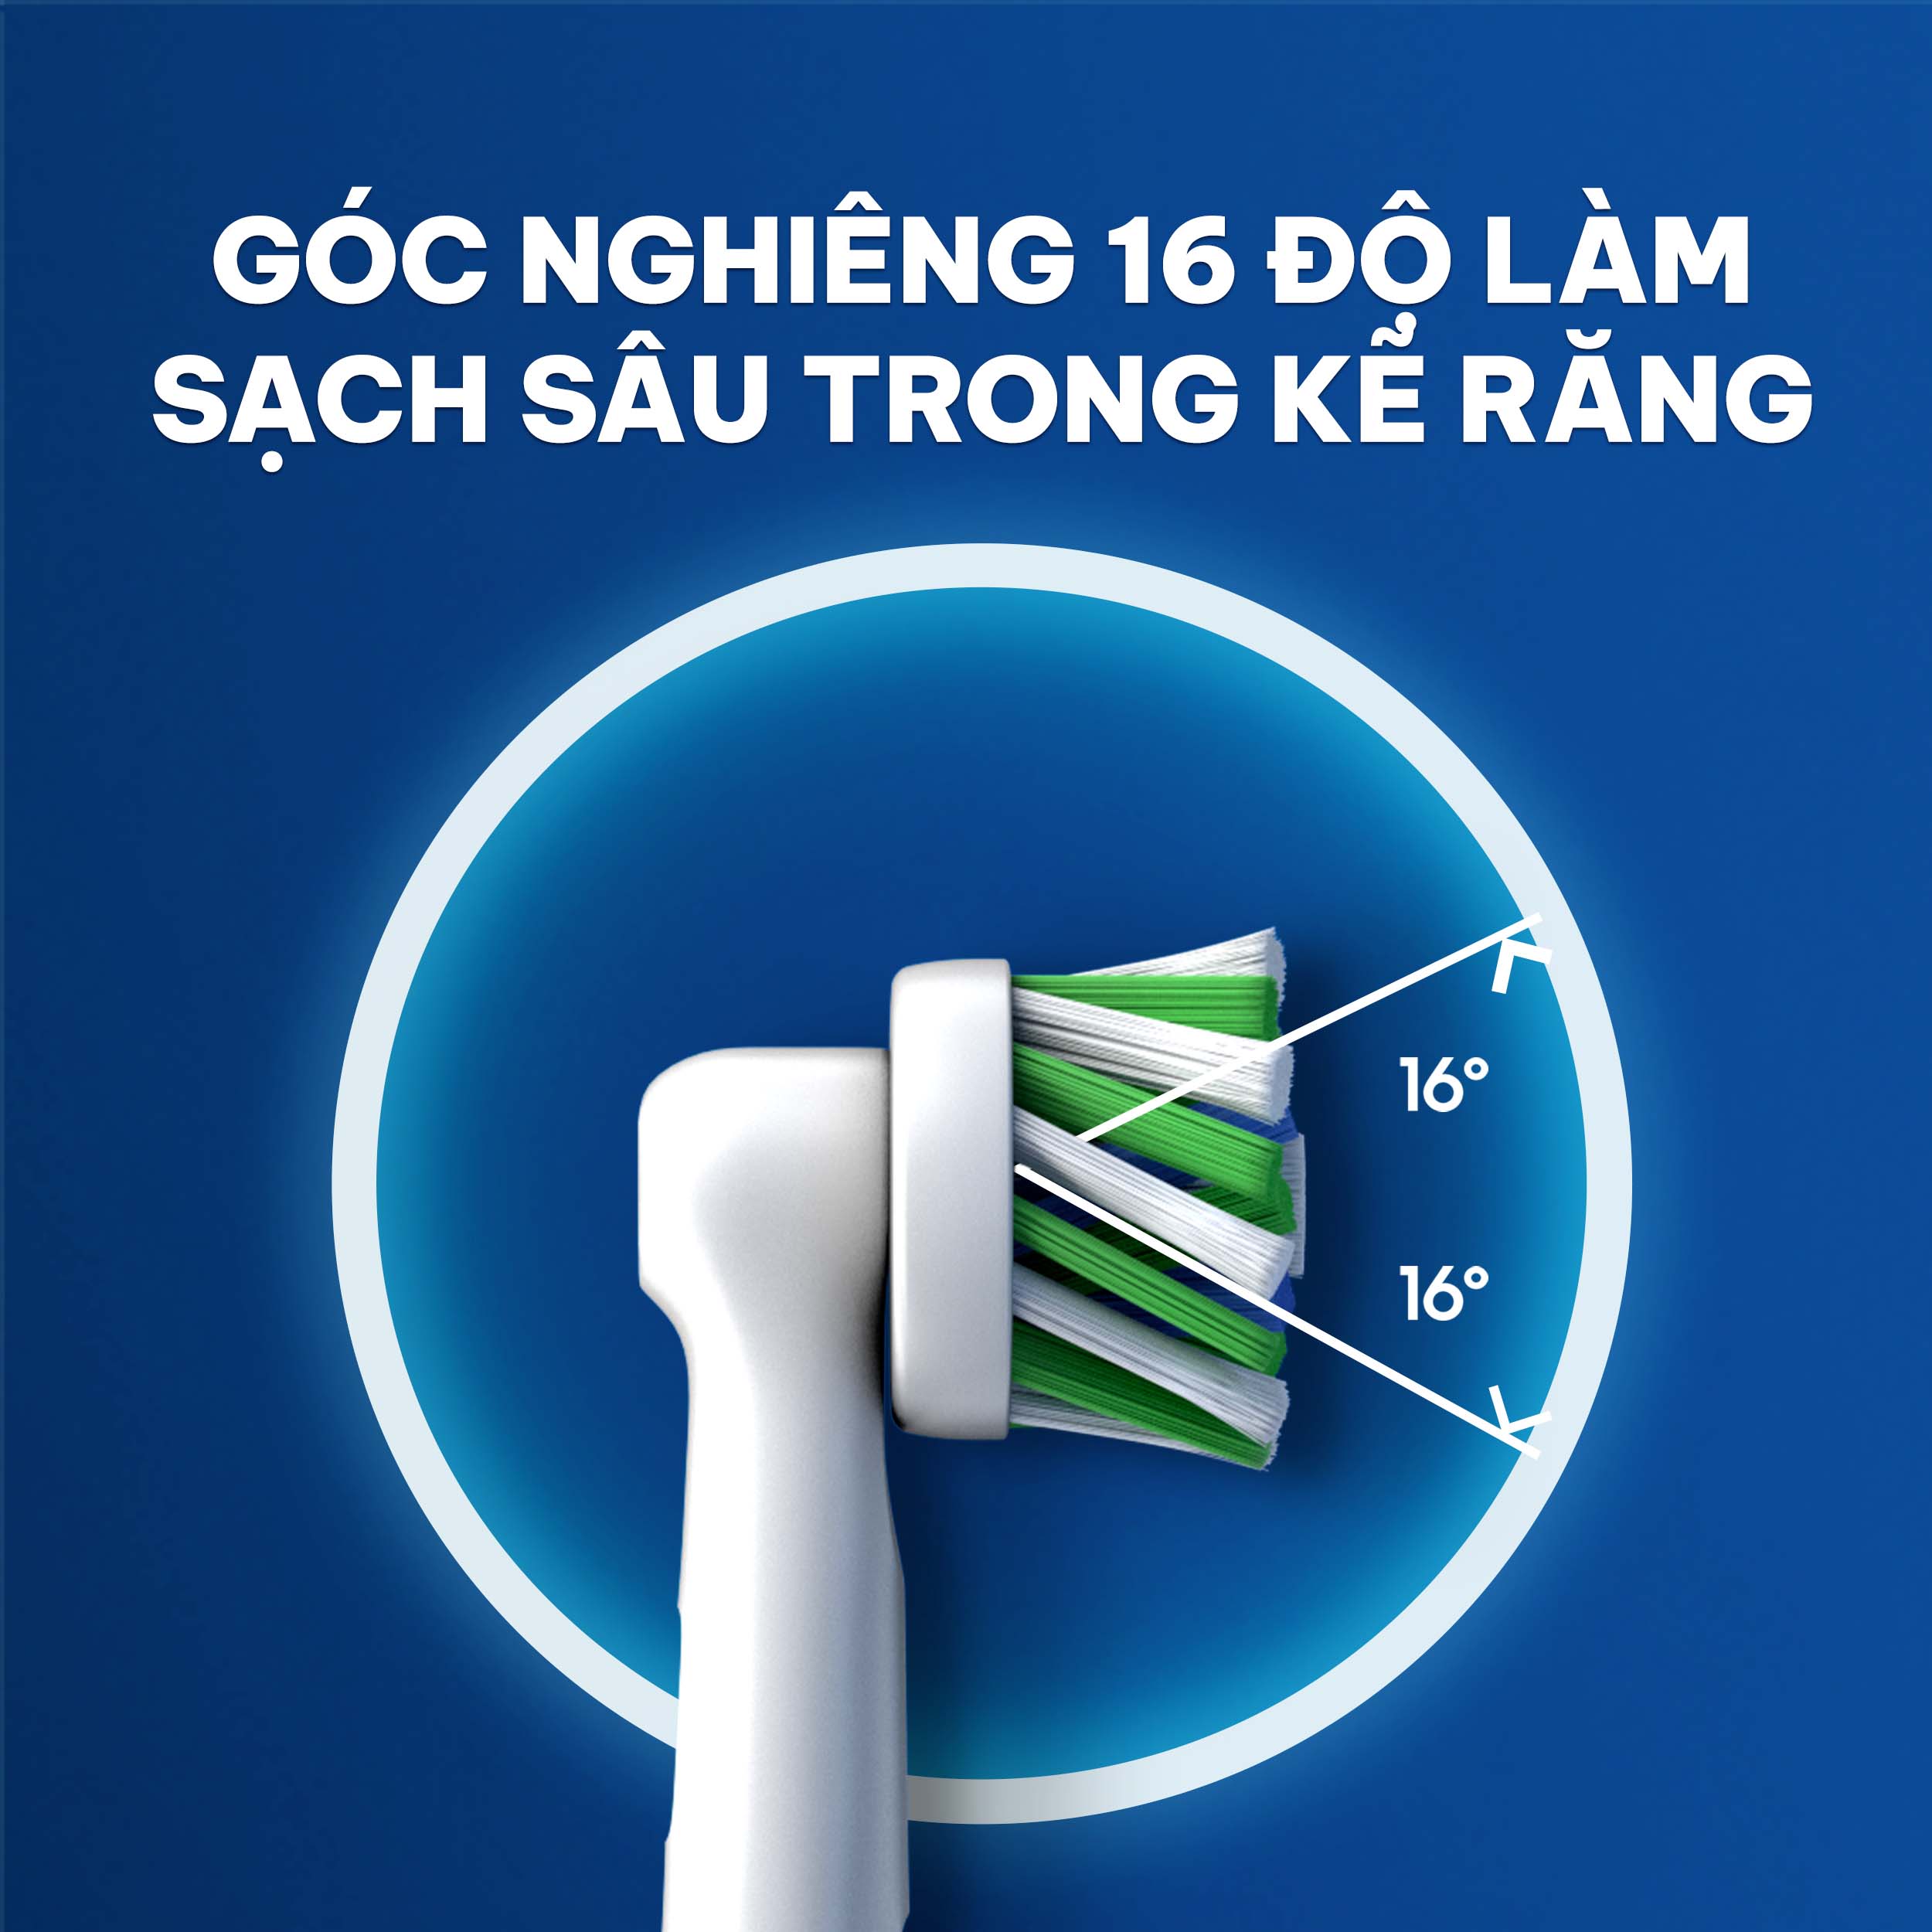 Bàn chải đánh răng điện Oral-B Pro 500 D16.513 - Hàng chính hãng 100%